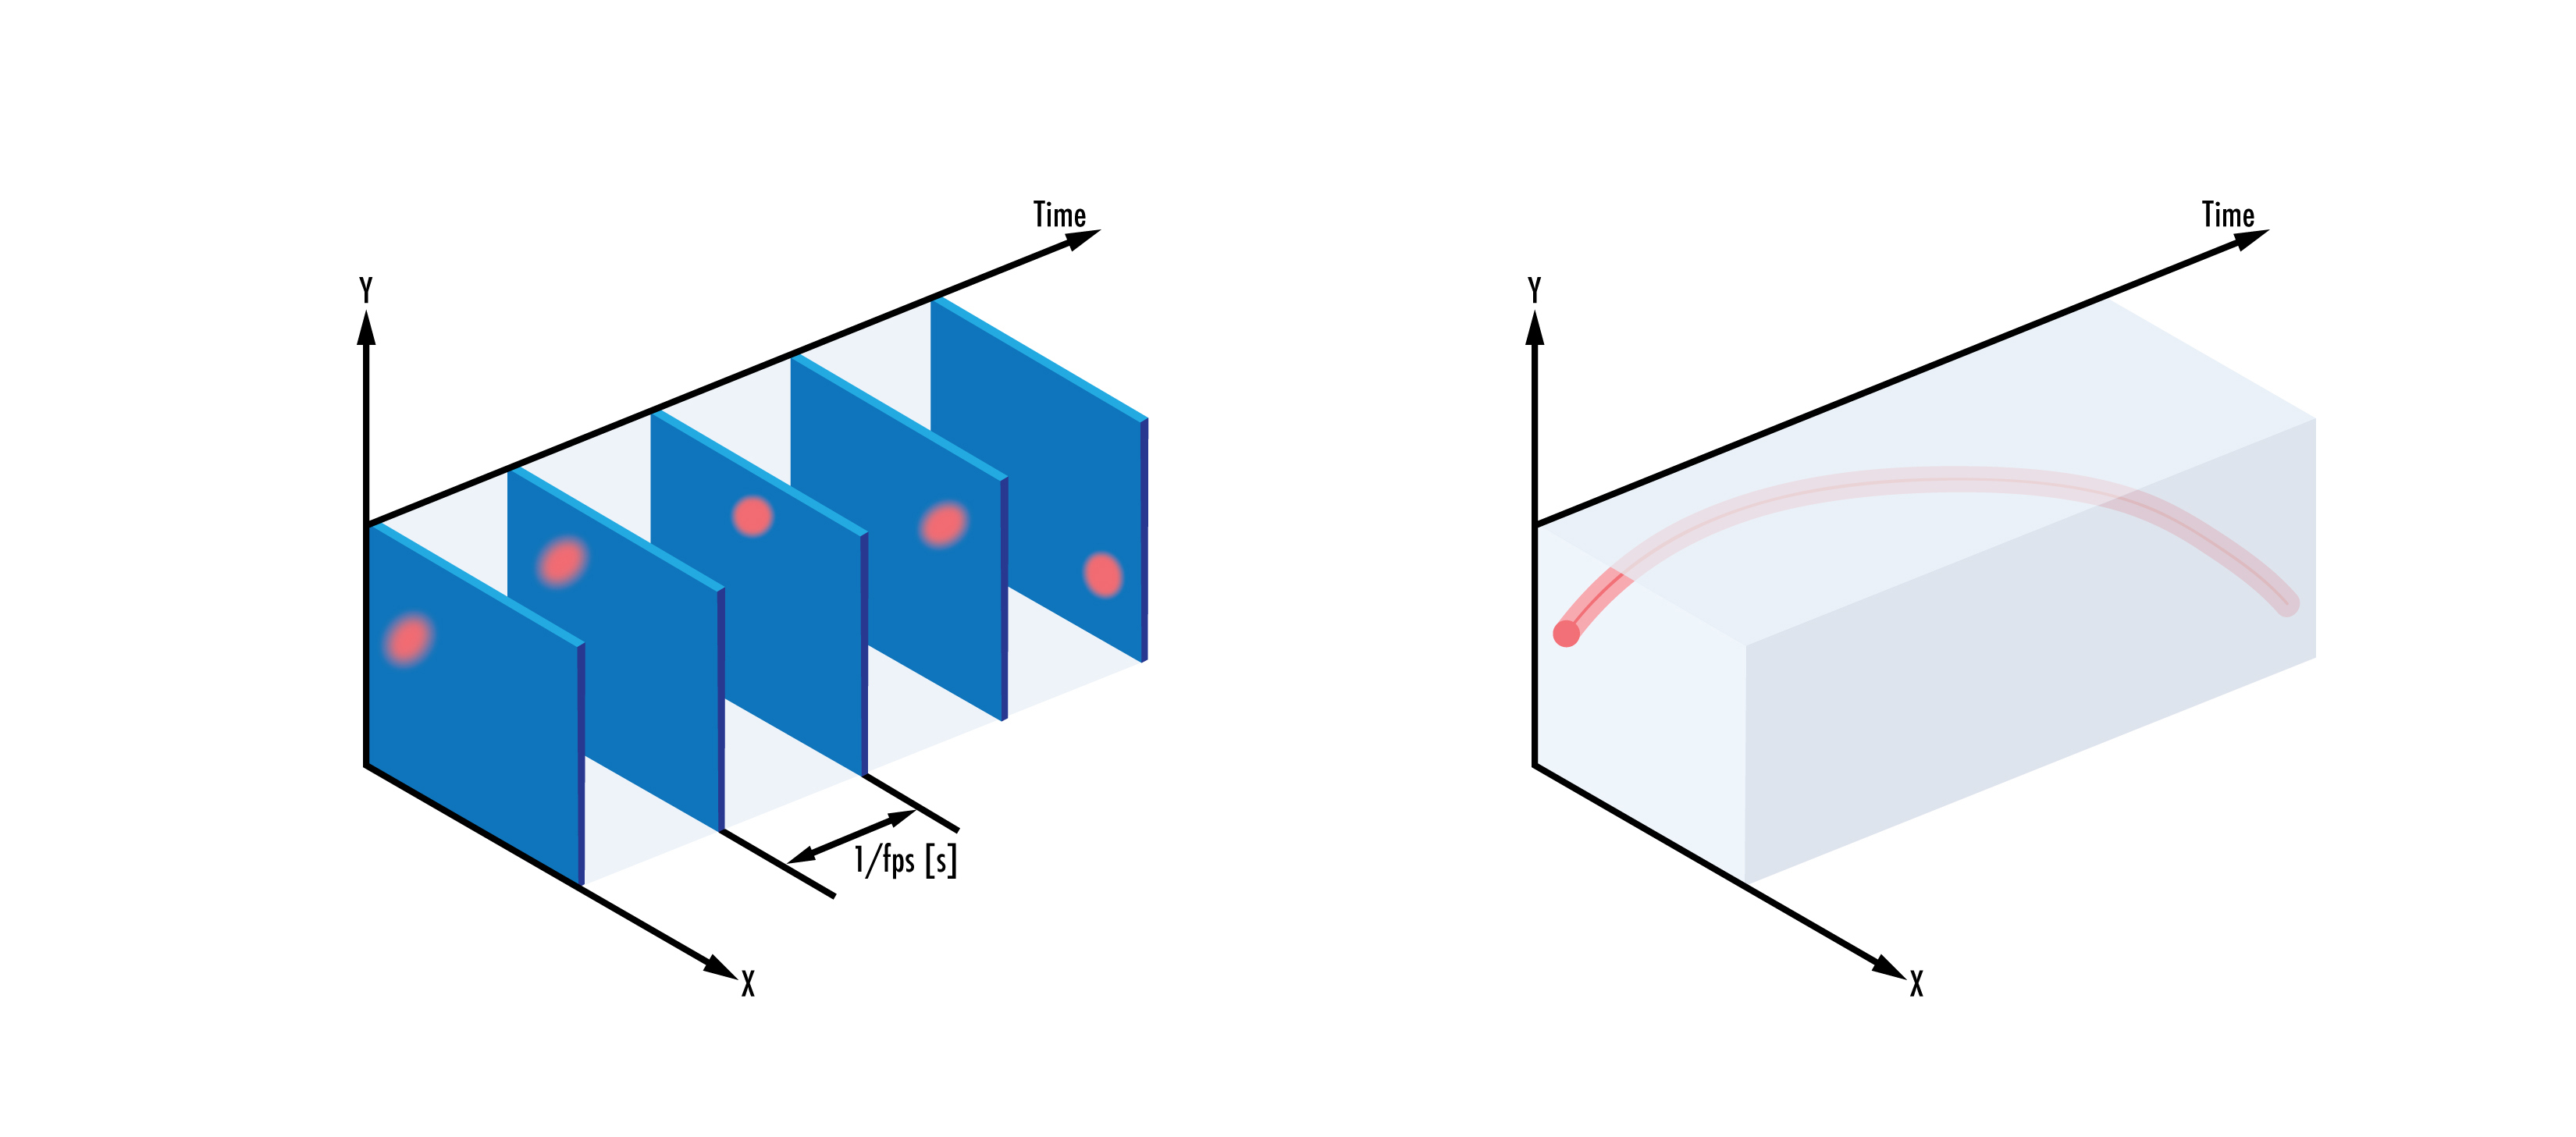 Les capteurs conventionnels (à gauche) enregistrent des images à un rythme fixe, indépendamment des modifications de l'objet dans le champ de vision, tandis que les capteurs neuromorphiques (à droite) enregistrent des modifications de pixels individuels en fonction de la détection d'un changement d'intensité dans le champ de vision.